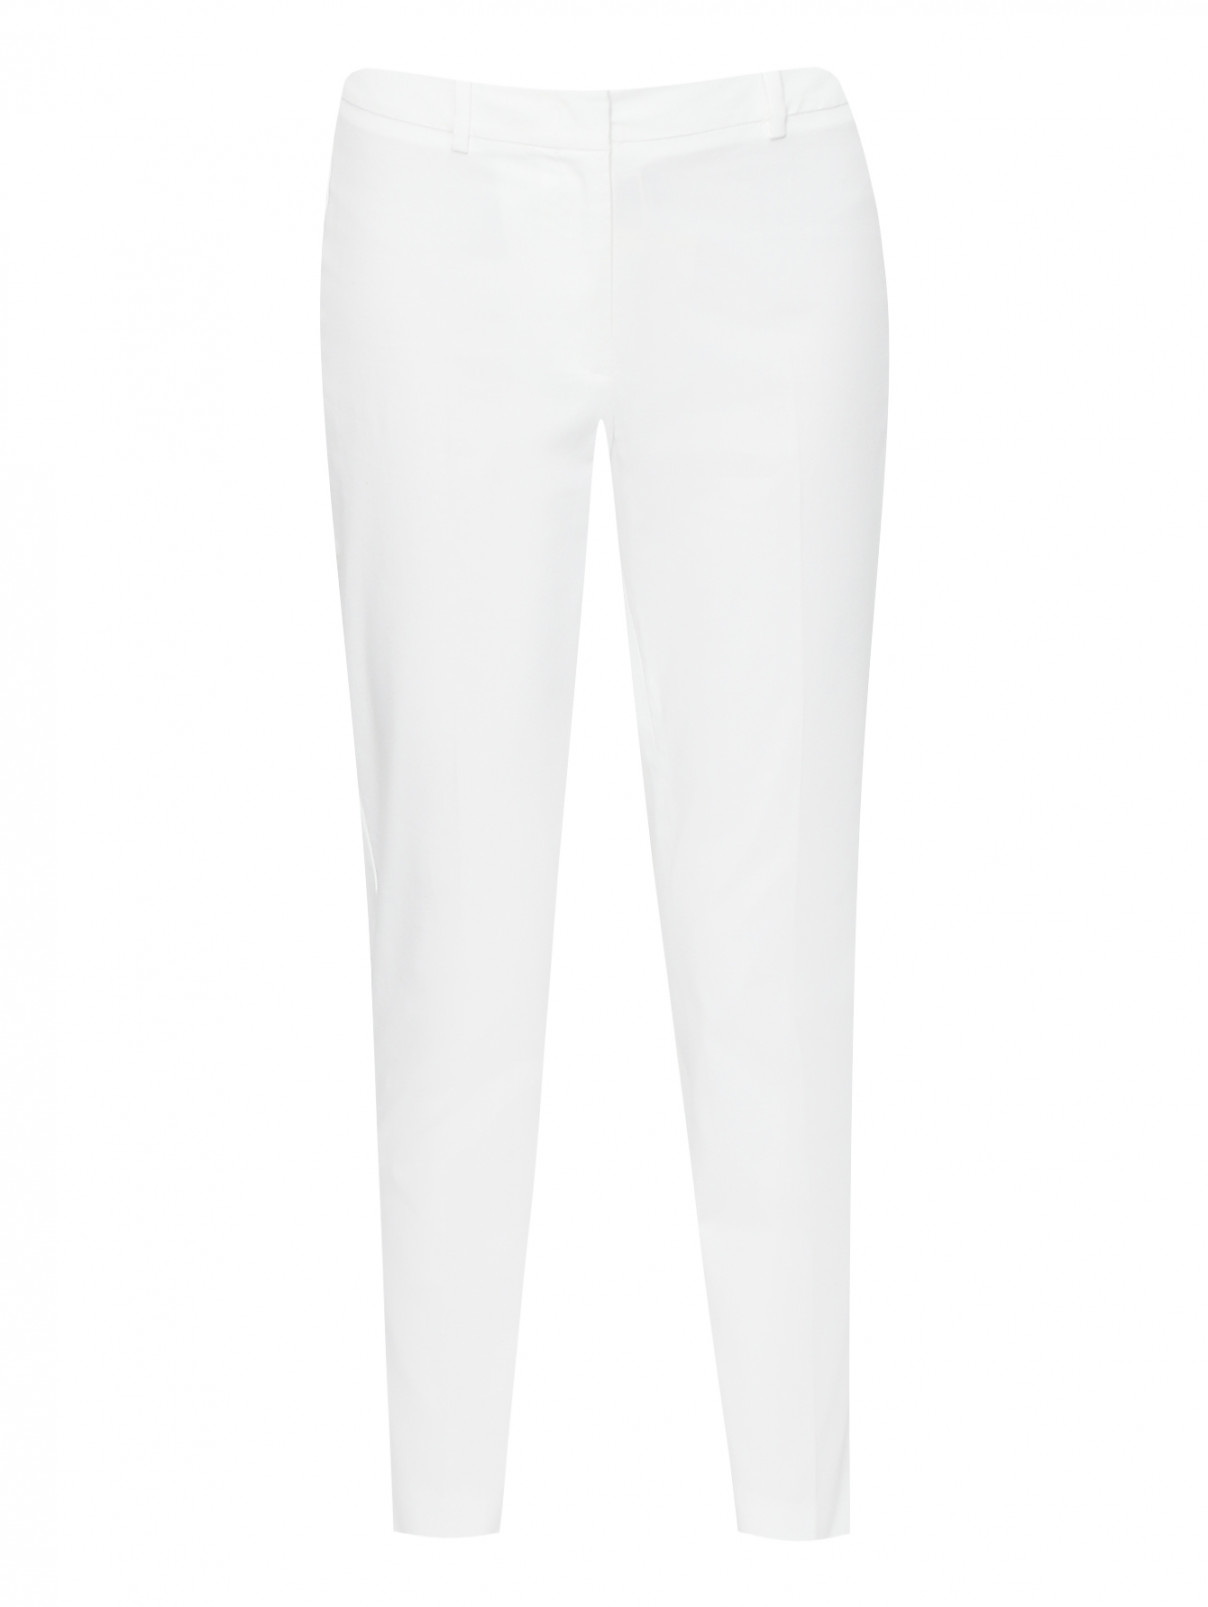 Укороченные брюки из хлопка Weekend Max Mara  –  Общий вид  – Цвет:  Белый